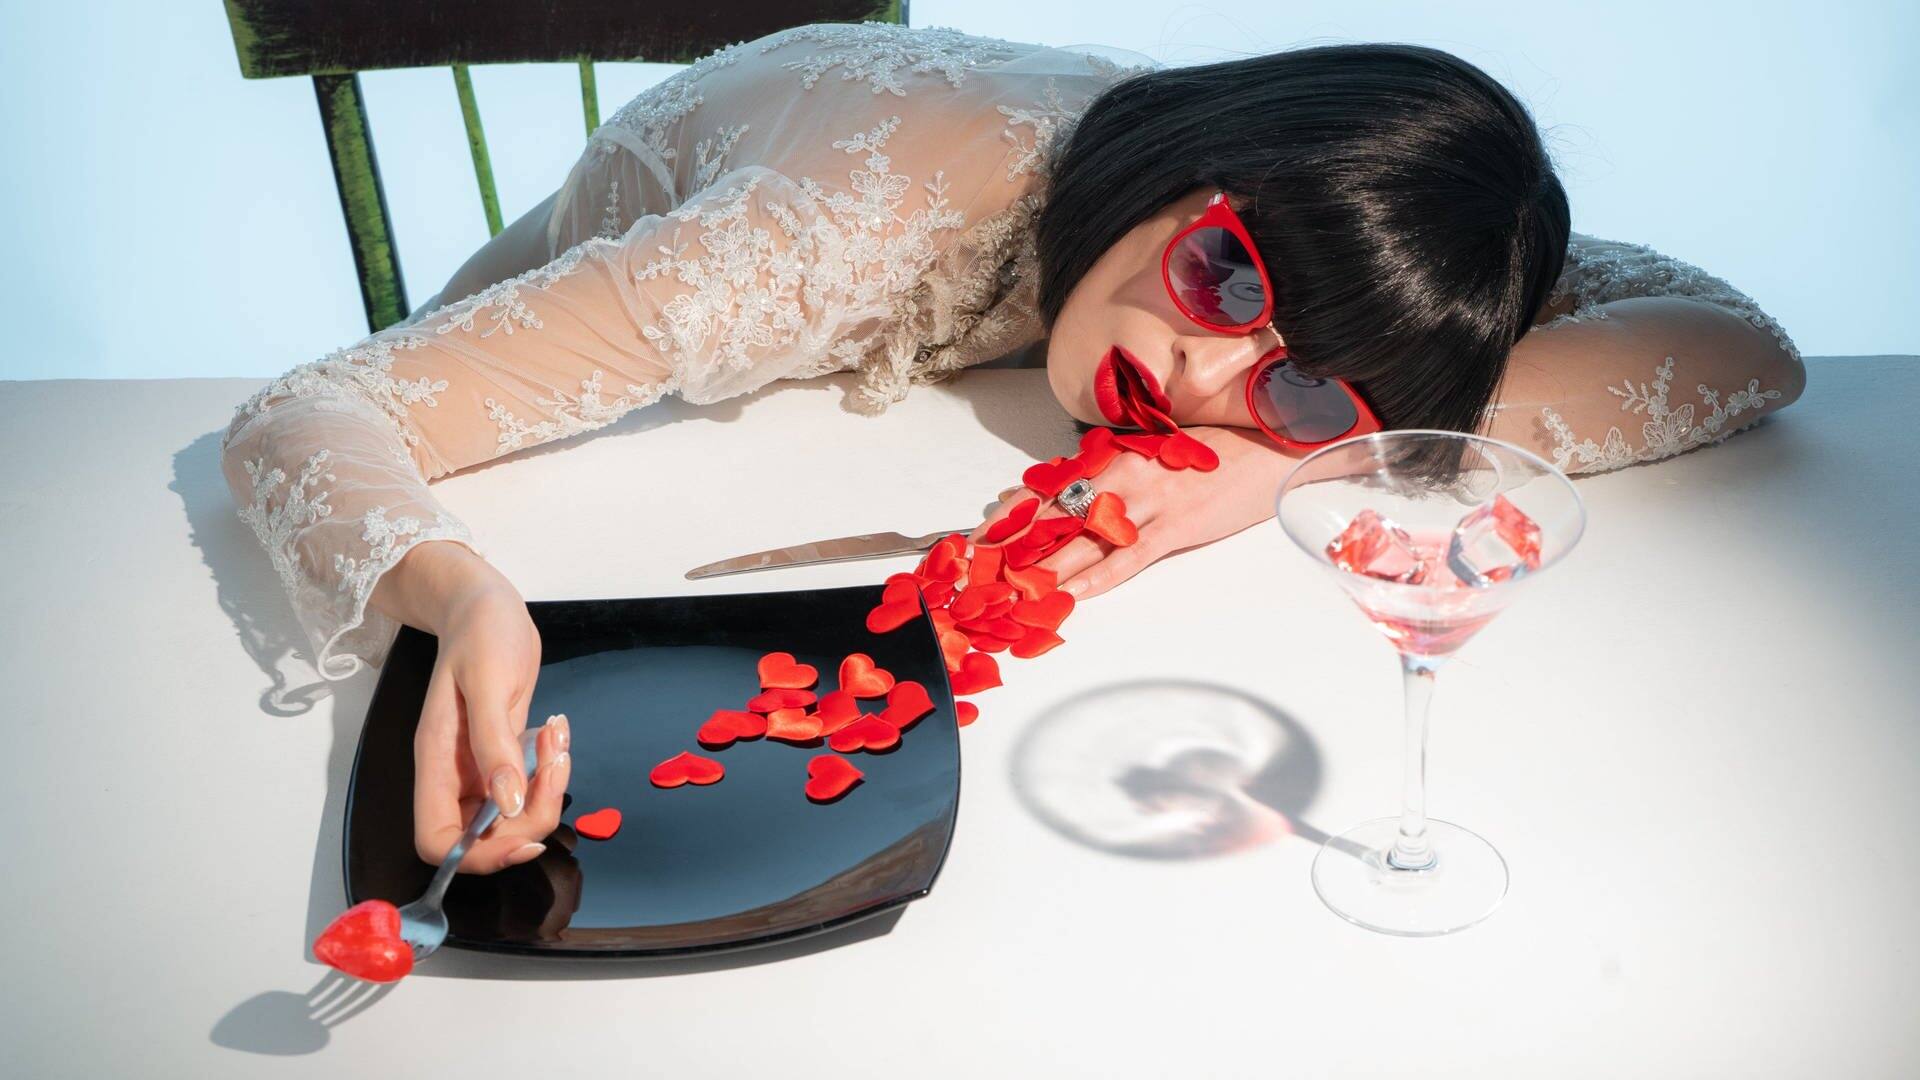 Una mujer se acuesta en una mesa de comedor y se atraganta con los corazones que salen de su boca (Foto: Adobe Stock/razoomanetu)